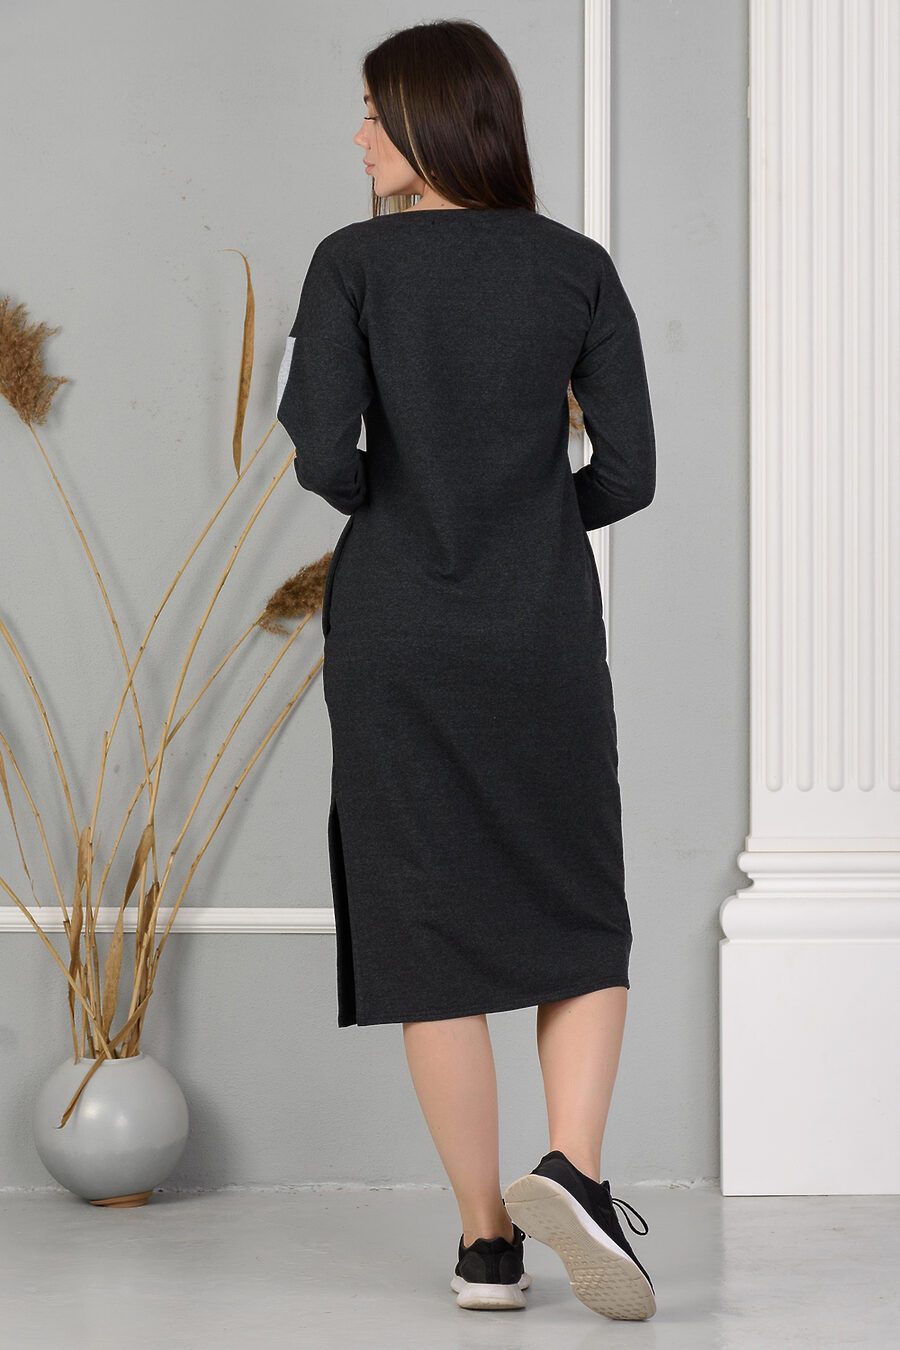 Платье 24835 для женщин НАТАЛИ 717630 купить оптом от производителя. Совместная покупка женской одежды в OptMoyo